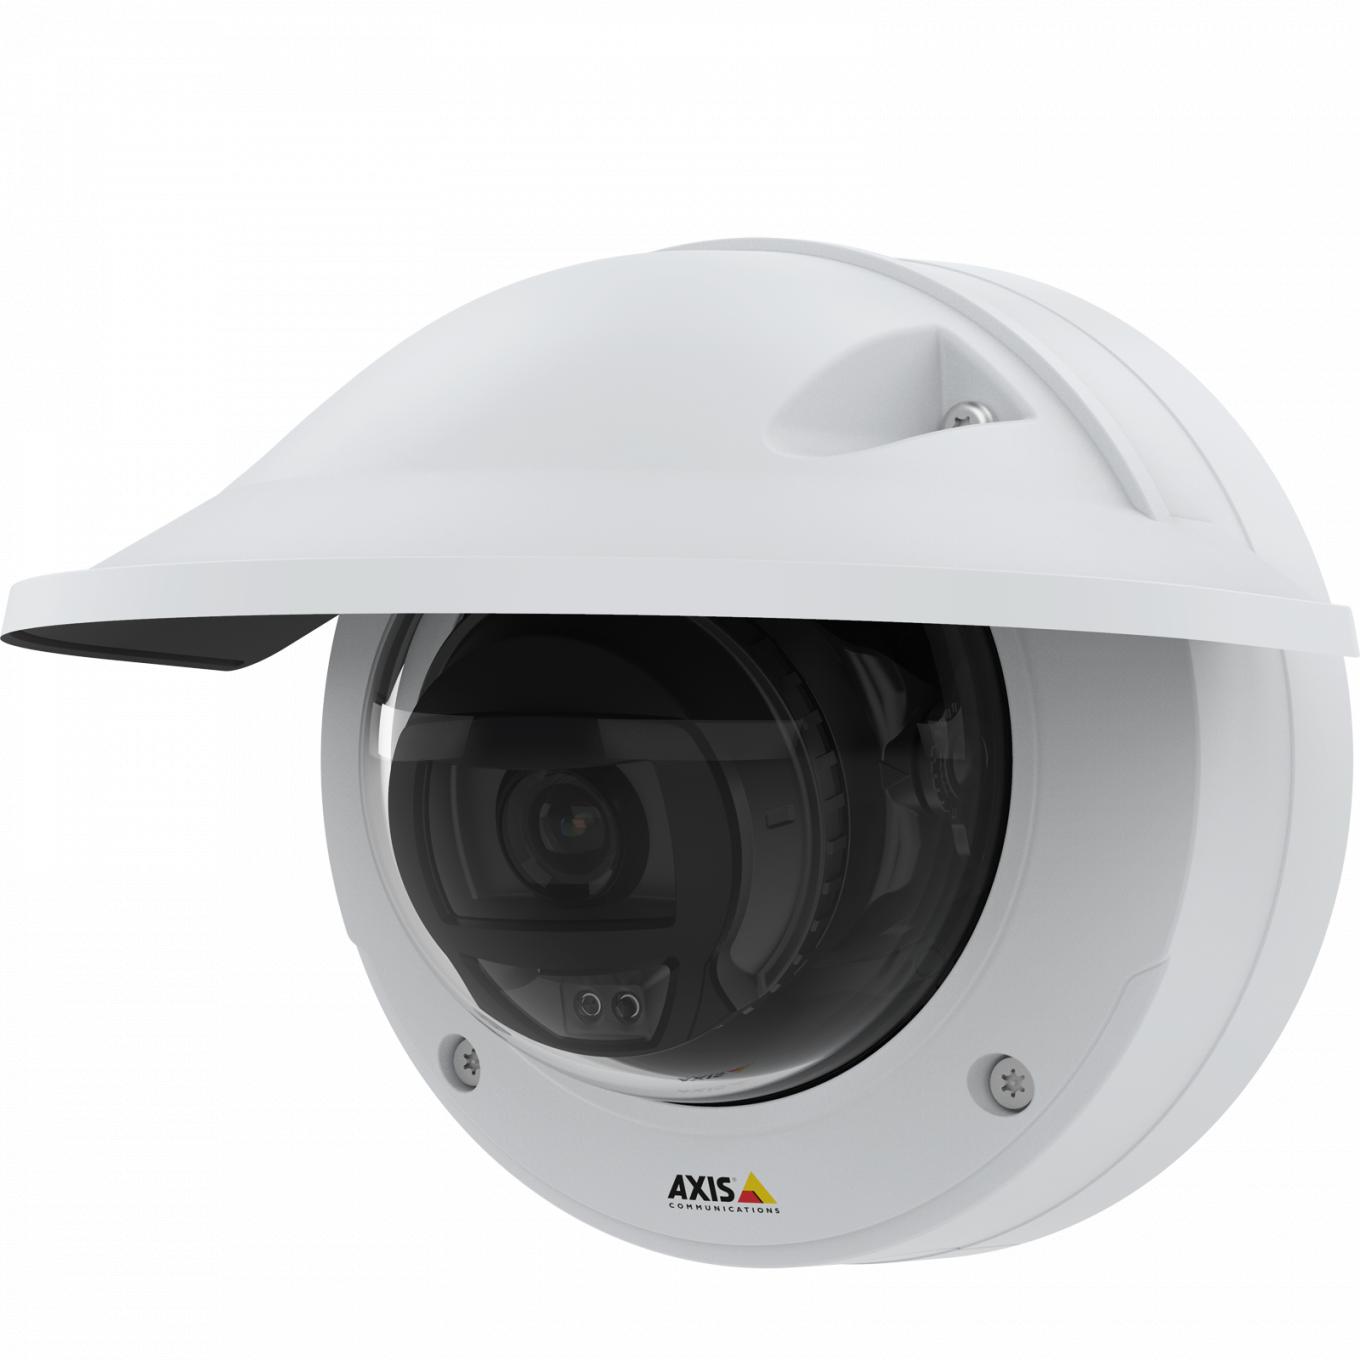 IP Camera AXIS p3245 lveはHDTV 1080pビデオ品質を備えています。 カメラは左から見たもので、耐候性があります。